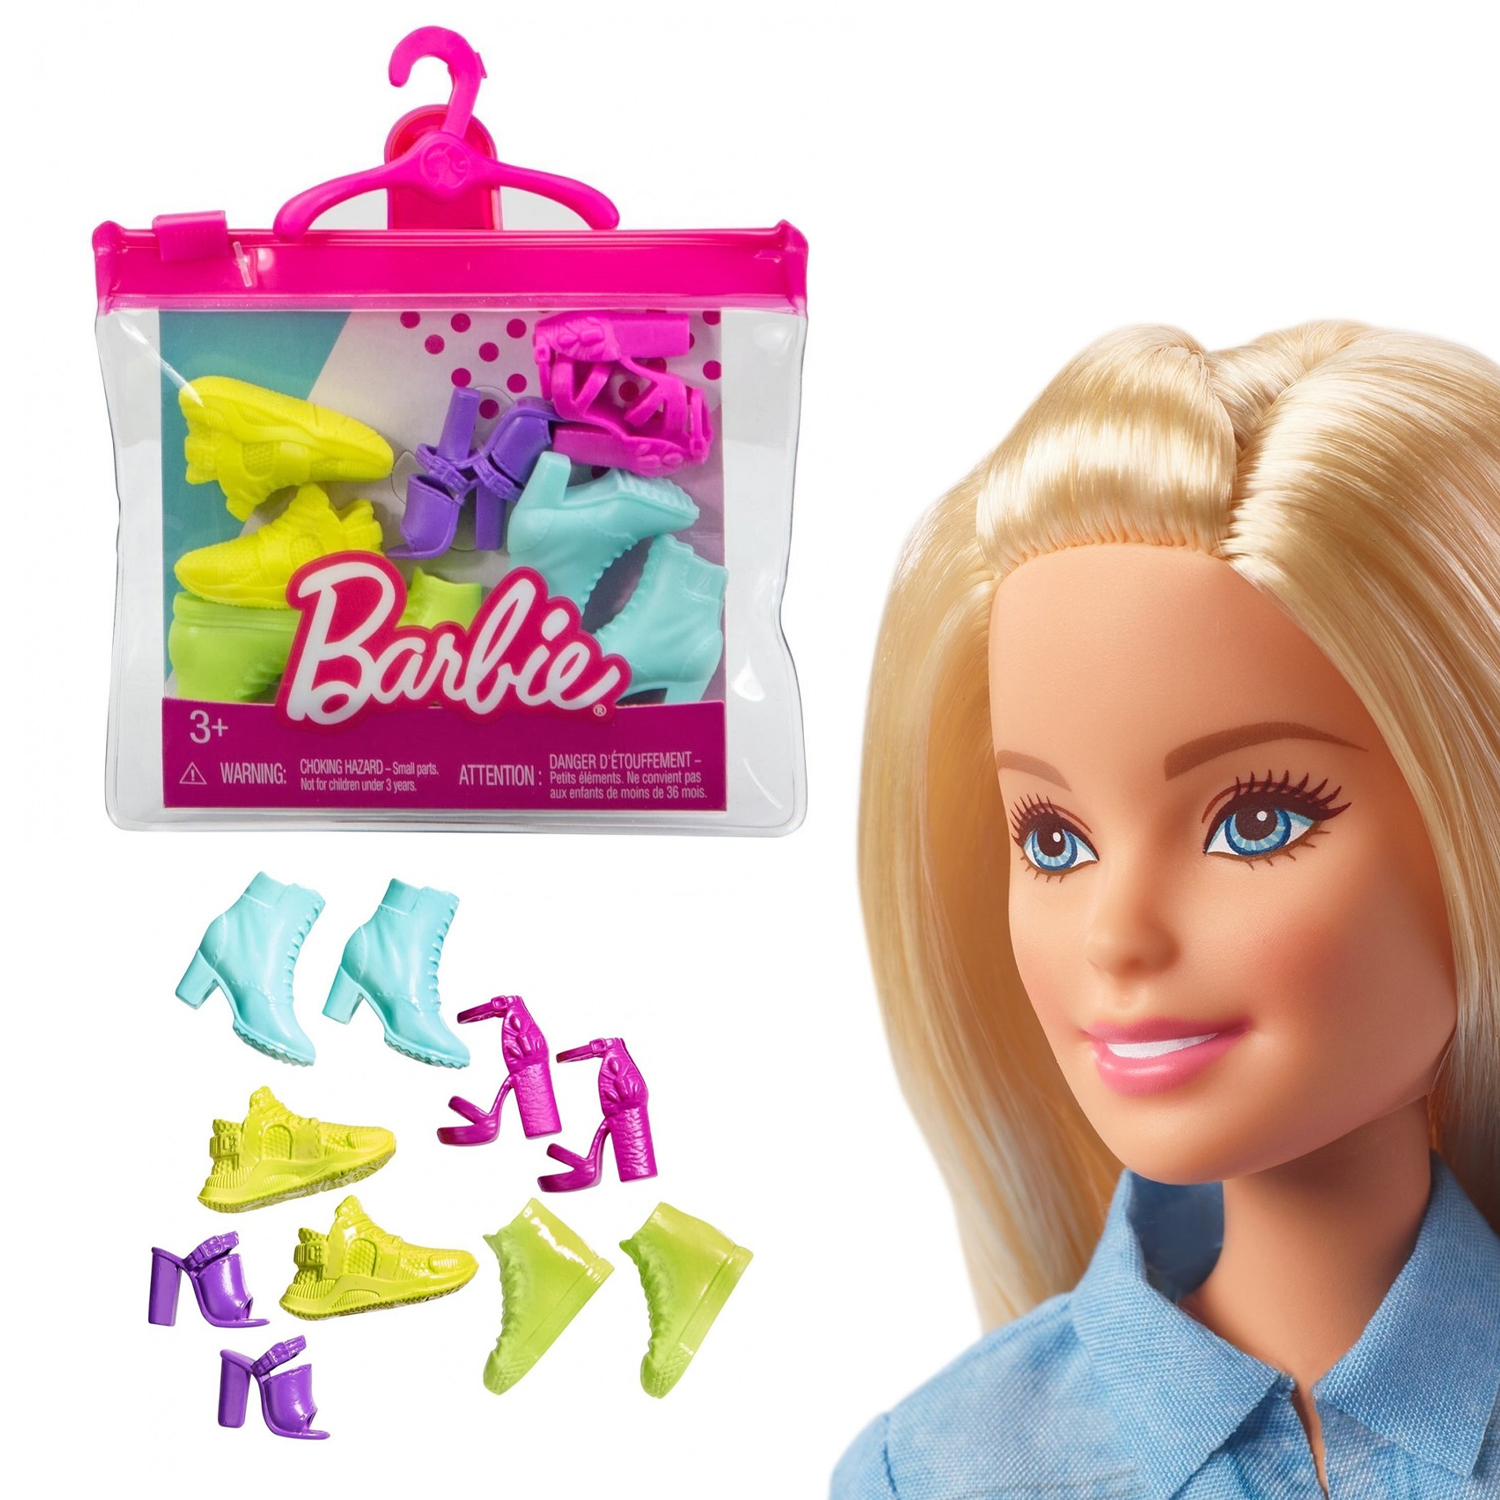 Обувь для кукол Barbie Mattel набор 5 пар HBV29